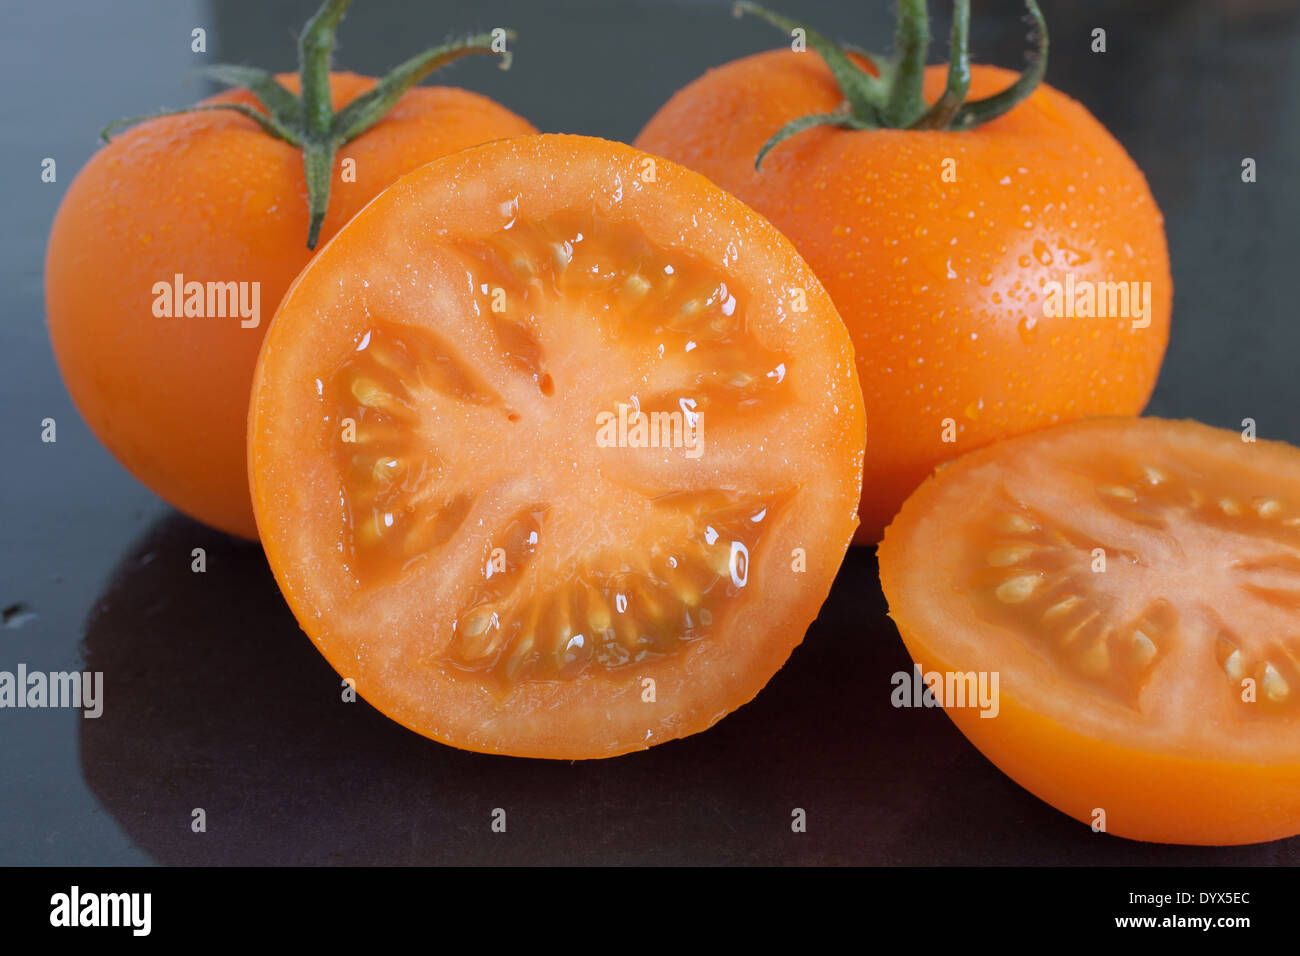 Reliquia de la variedad de vid naranja tomates de color naranja en lugar del habitual rojo. Foto de stock